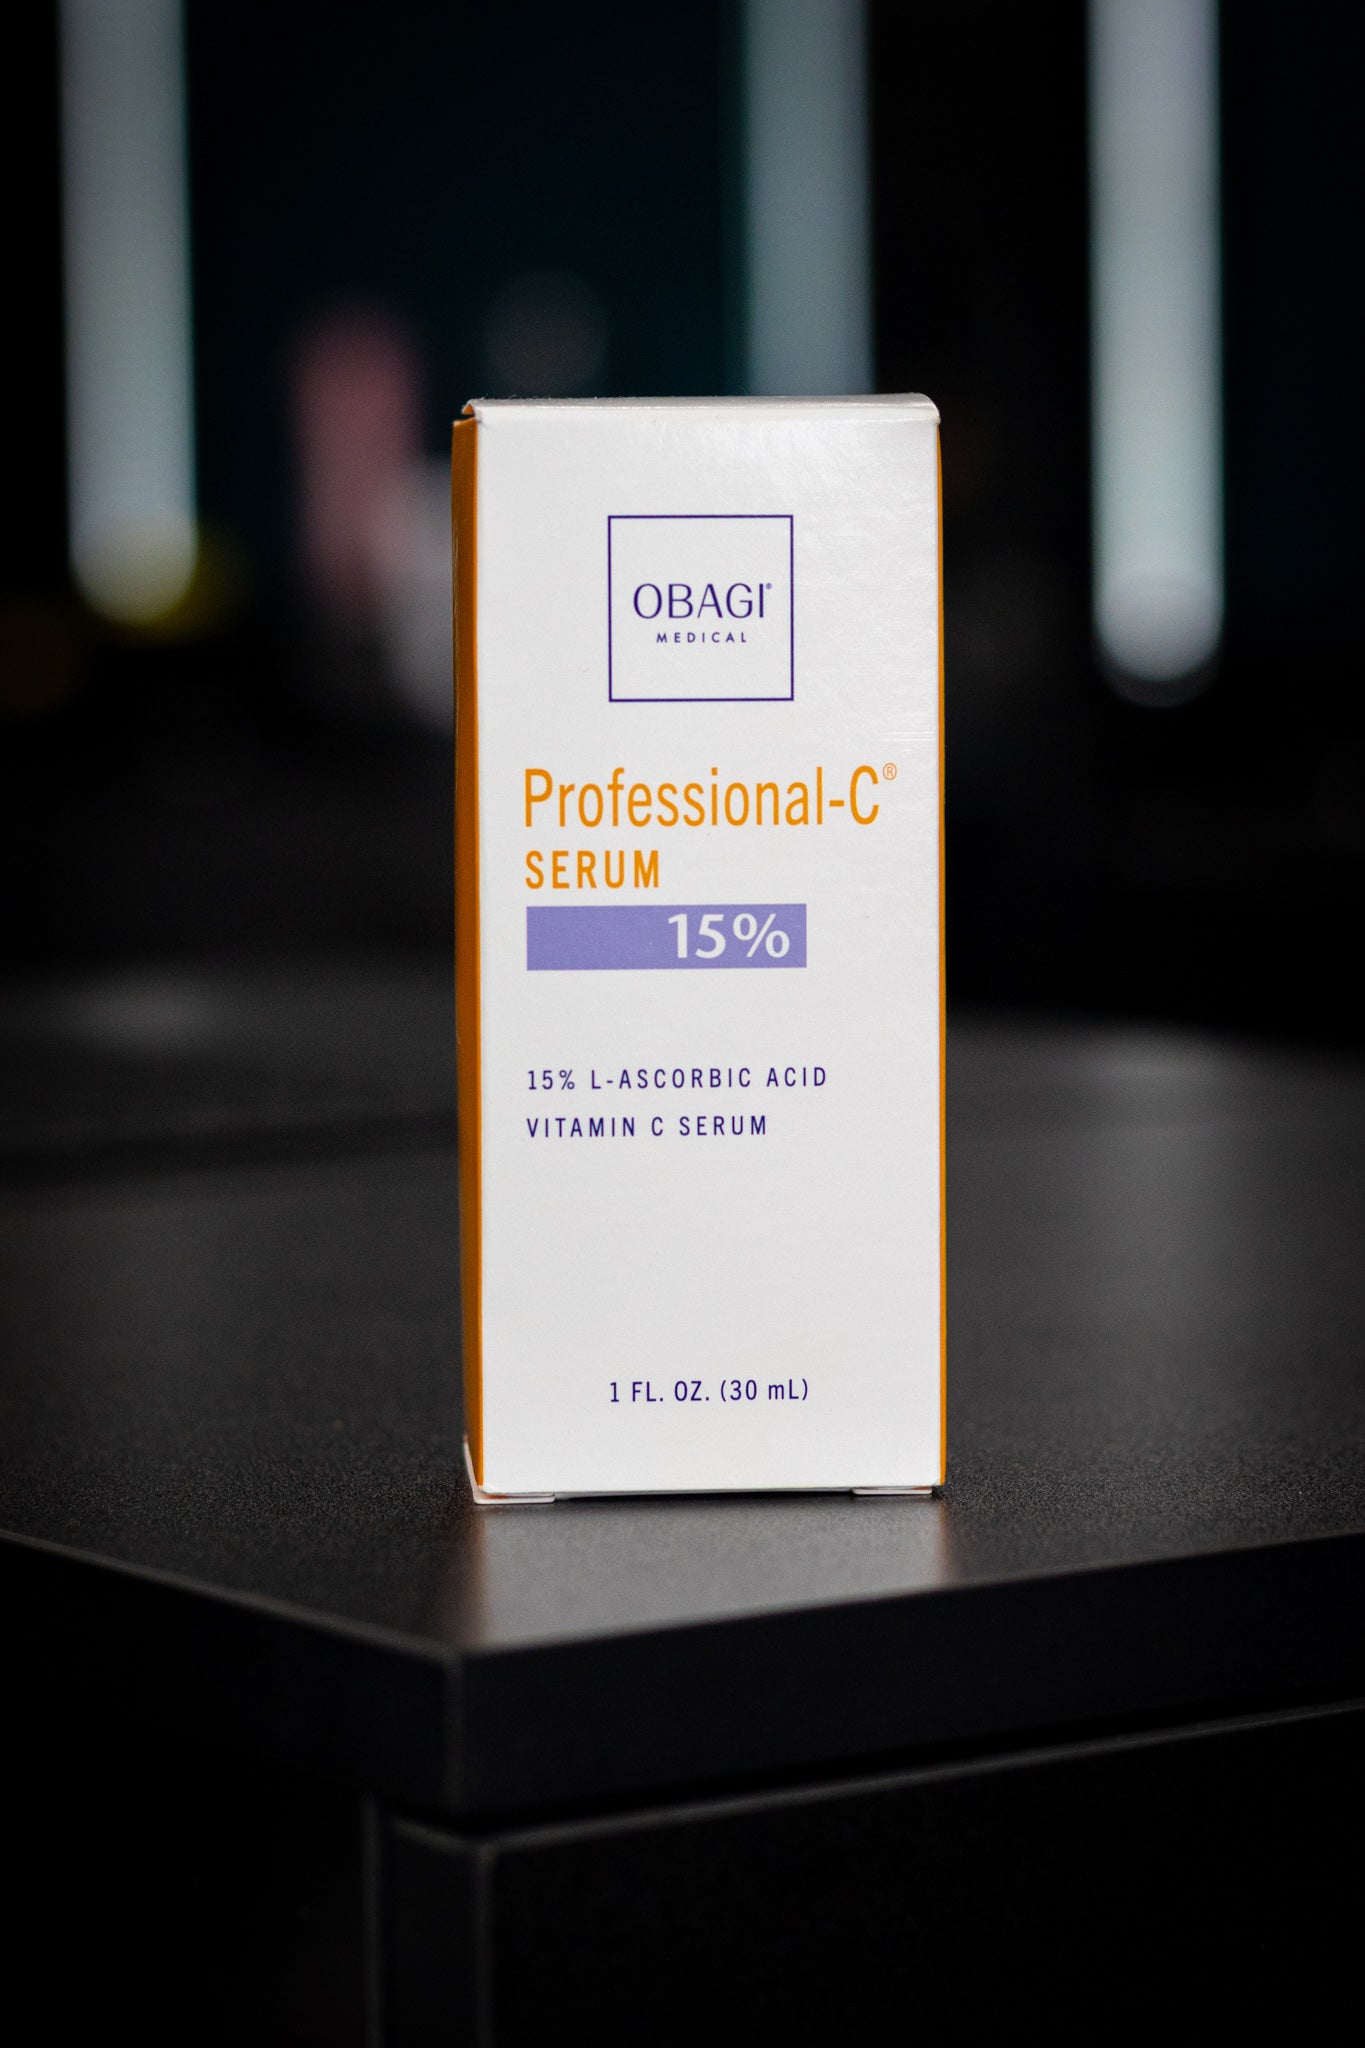 Obagi Professional -C Serum 15%